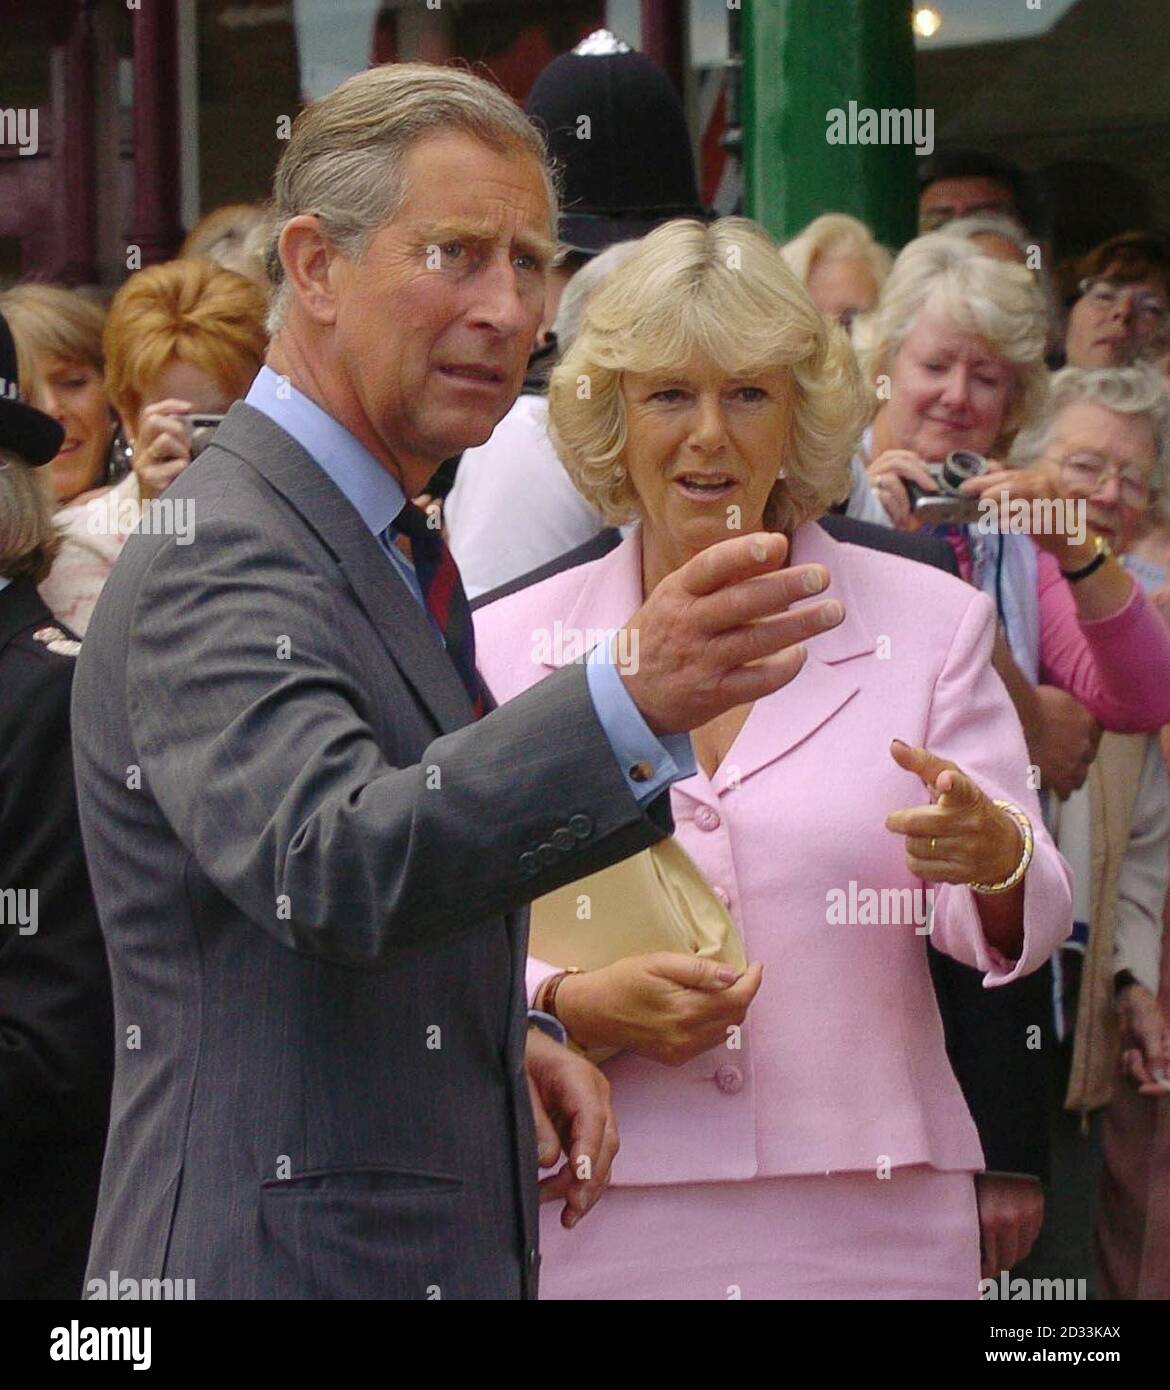 Le Prince de Galles et sa partenaire, Camilla Parker-Bowles, accueillent des membres du public à l'extérieur de la Maison du commerçant de Marlborough, dans le Wiltshire, où elle a montré le Prince Two 'Bobby Vans, un système de prévention du crime dont elle est membre de la tutelle. Banque D'Images